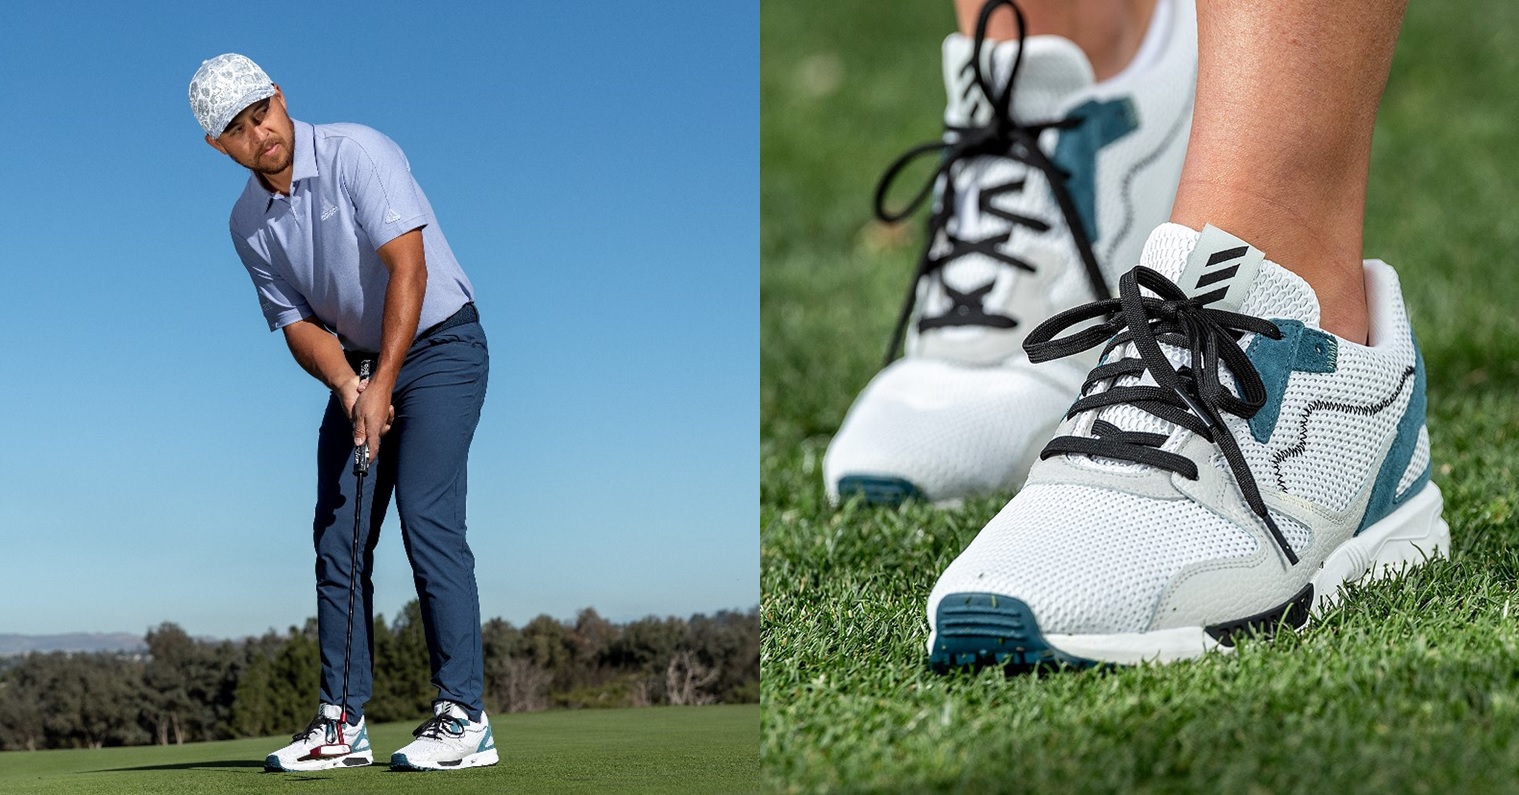 官方新聞/ adidas Golf 全新adicross ZX PRIMEBLUE 系列鞋款場上場下 